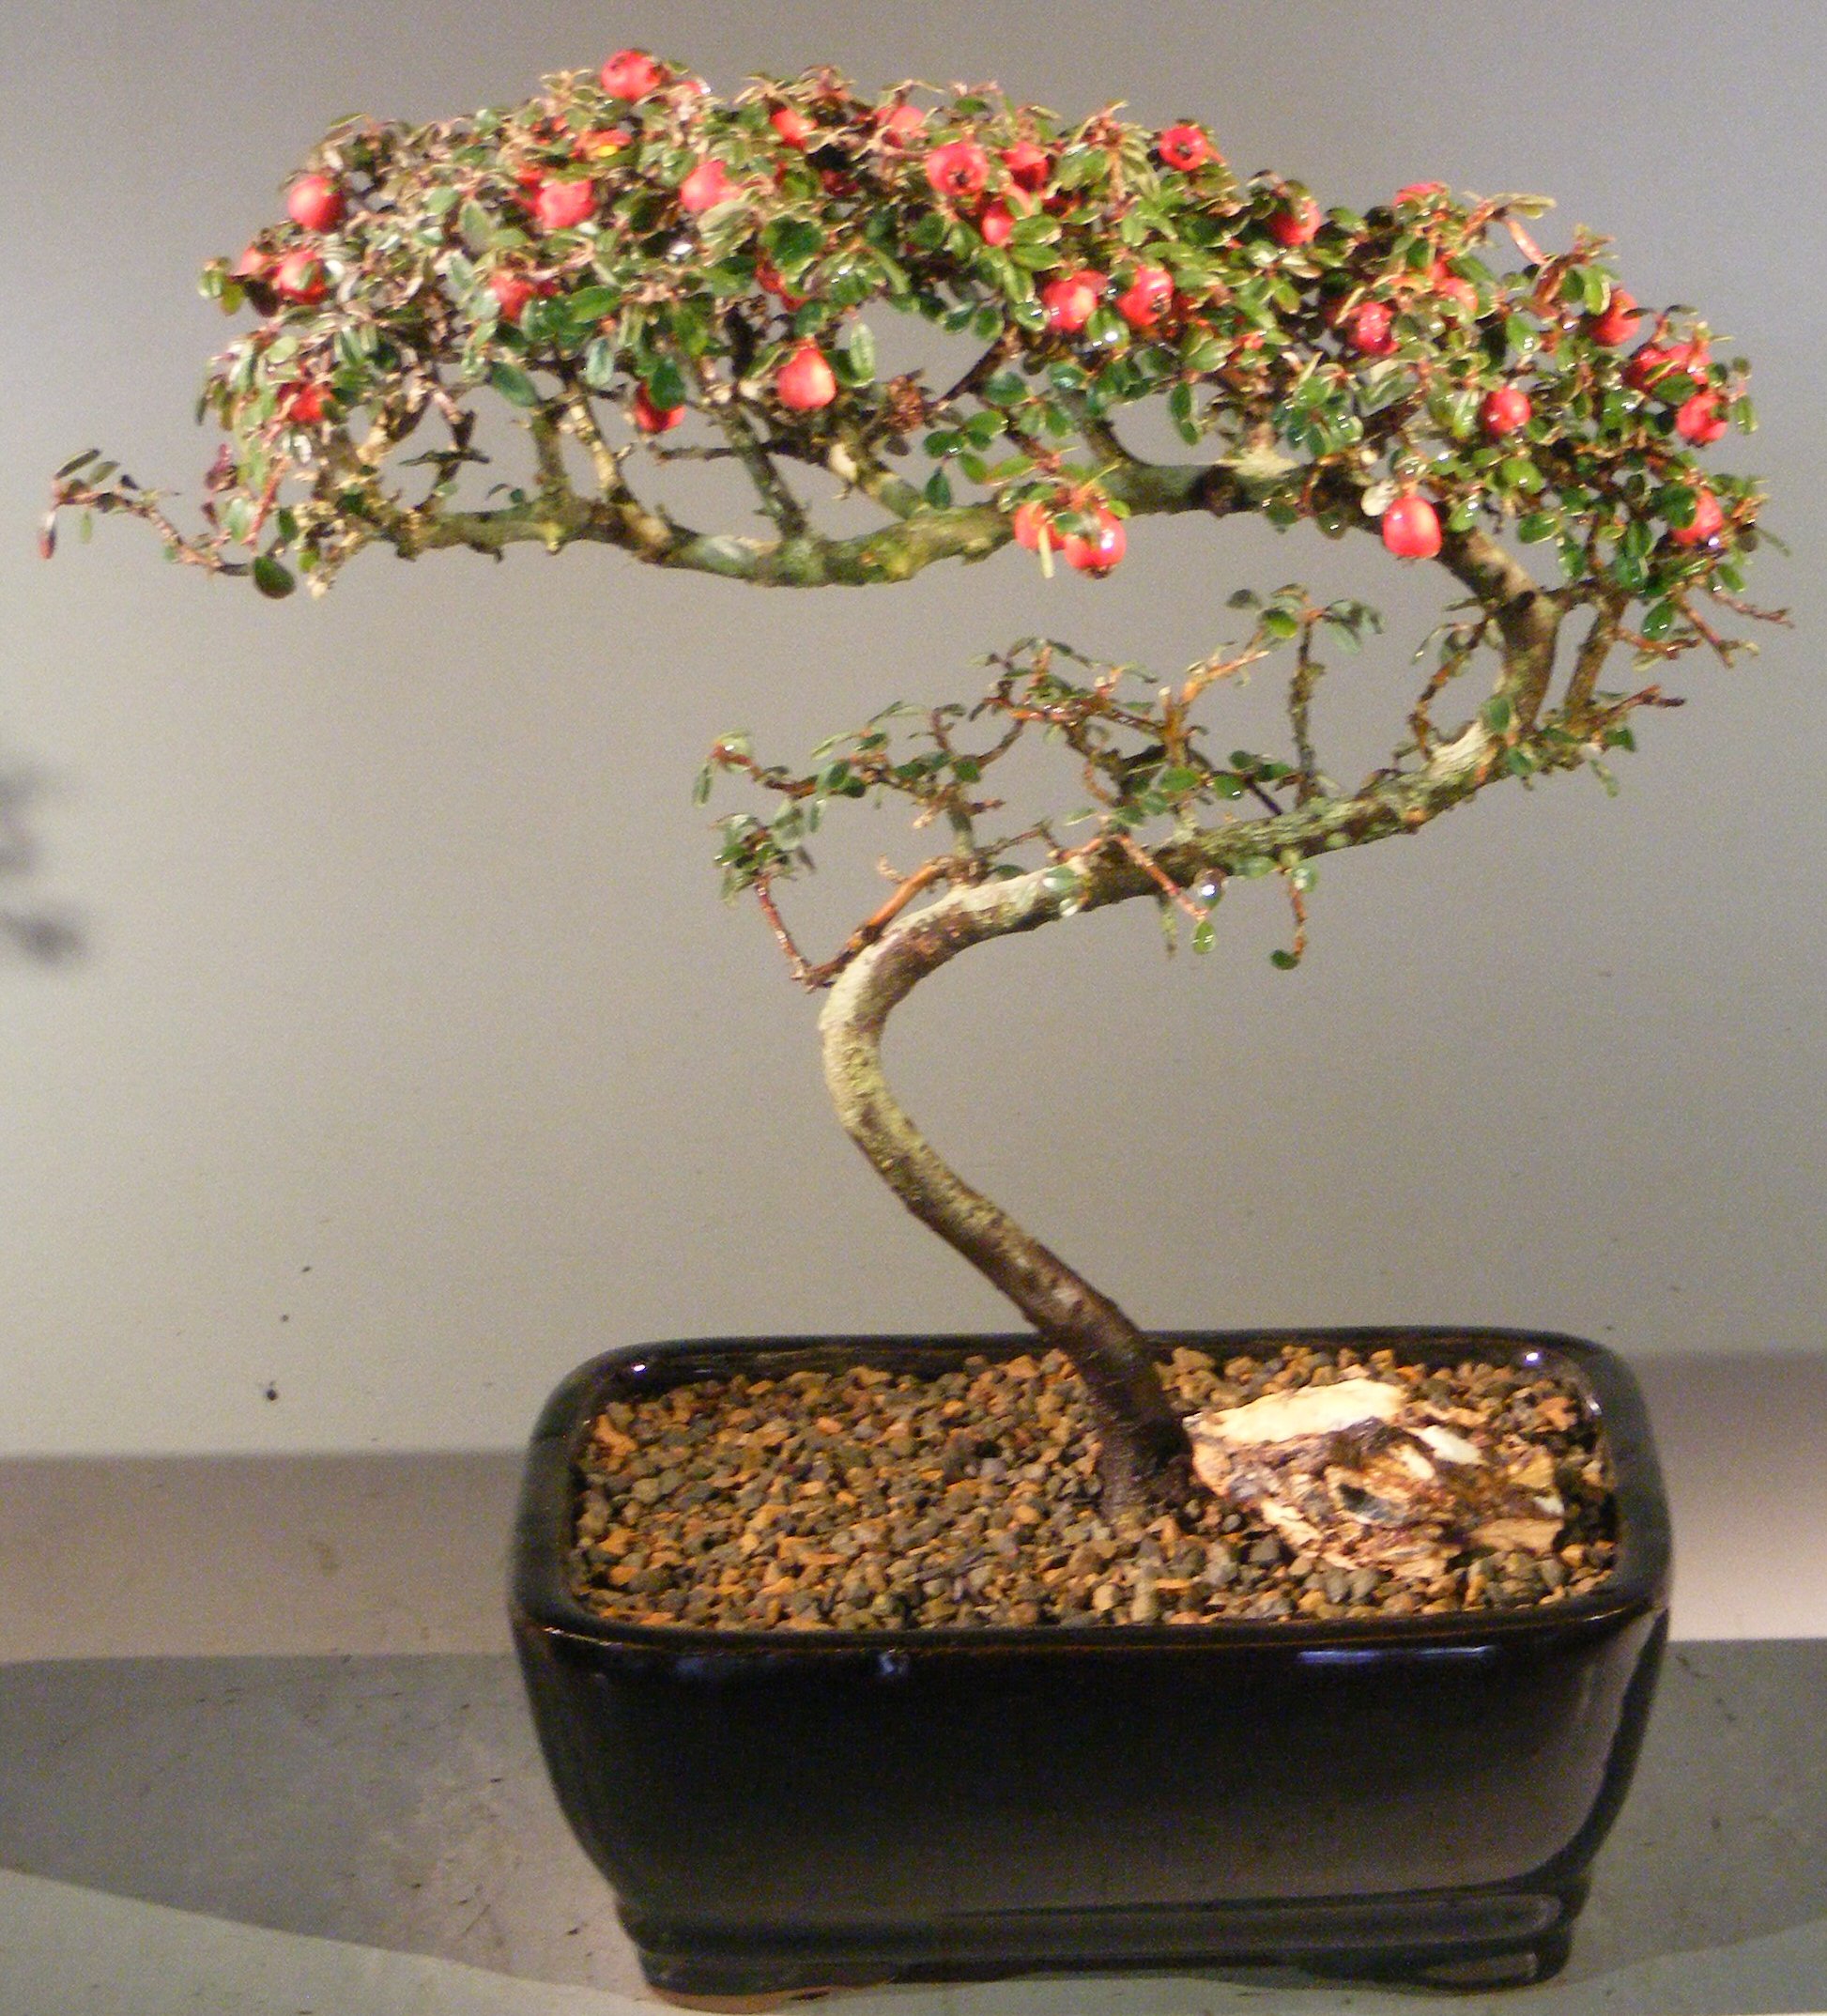 Flowering &amp; Fruiting Evergreen Cotoneaster Bonsai Tree&lt;br&gt;Curved Trunk Style&lt;br&gt;&lt;i&gt;(dammeri &#39;streibs findling&#39;)&lt;/i&gt;